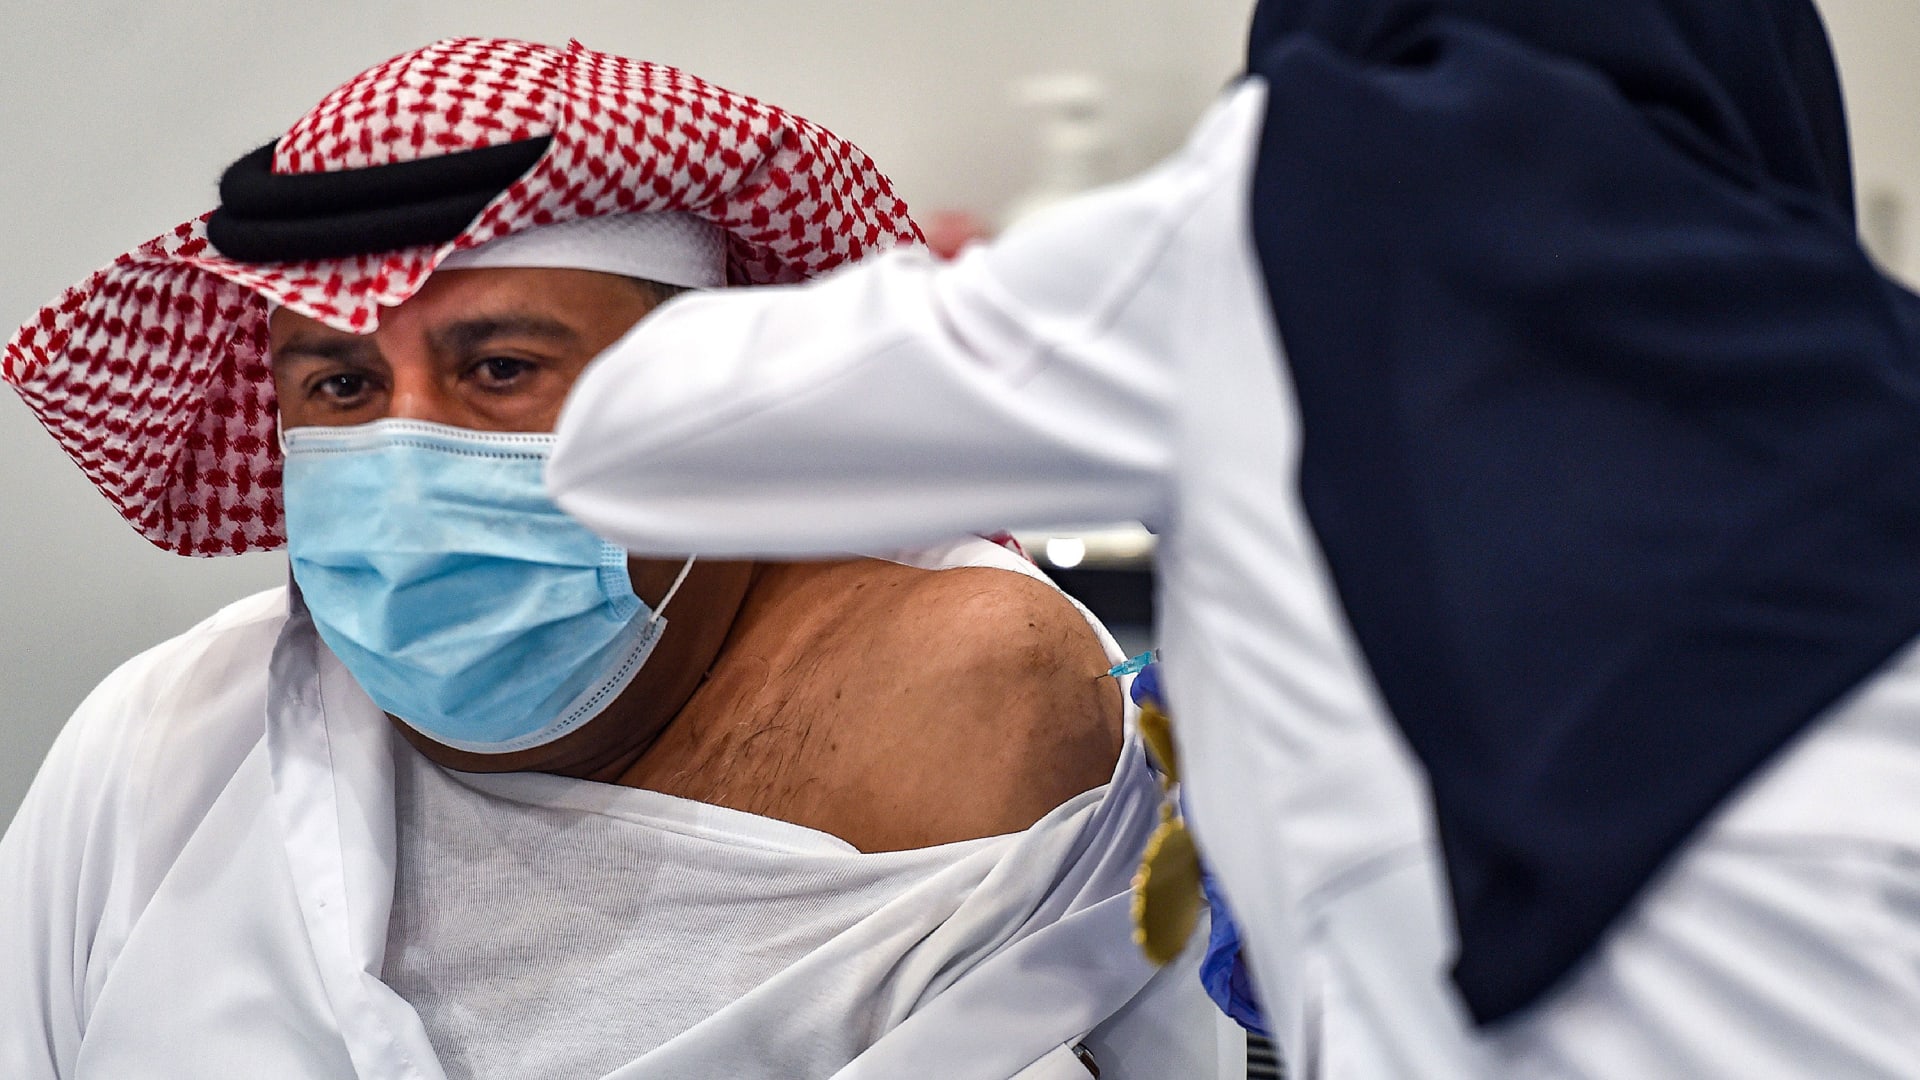 الق نظرة داخل أحد مراكز التطعيم للقاحات كورونا في الإمارات